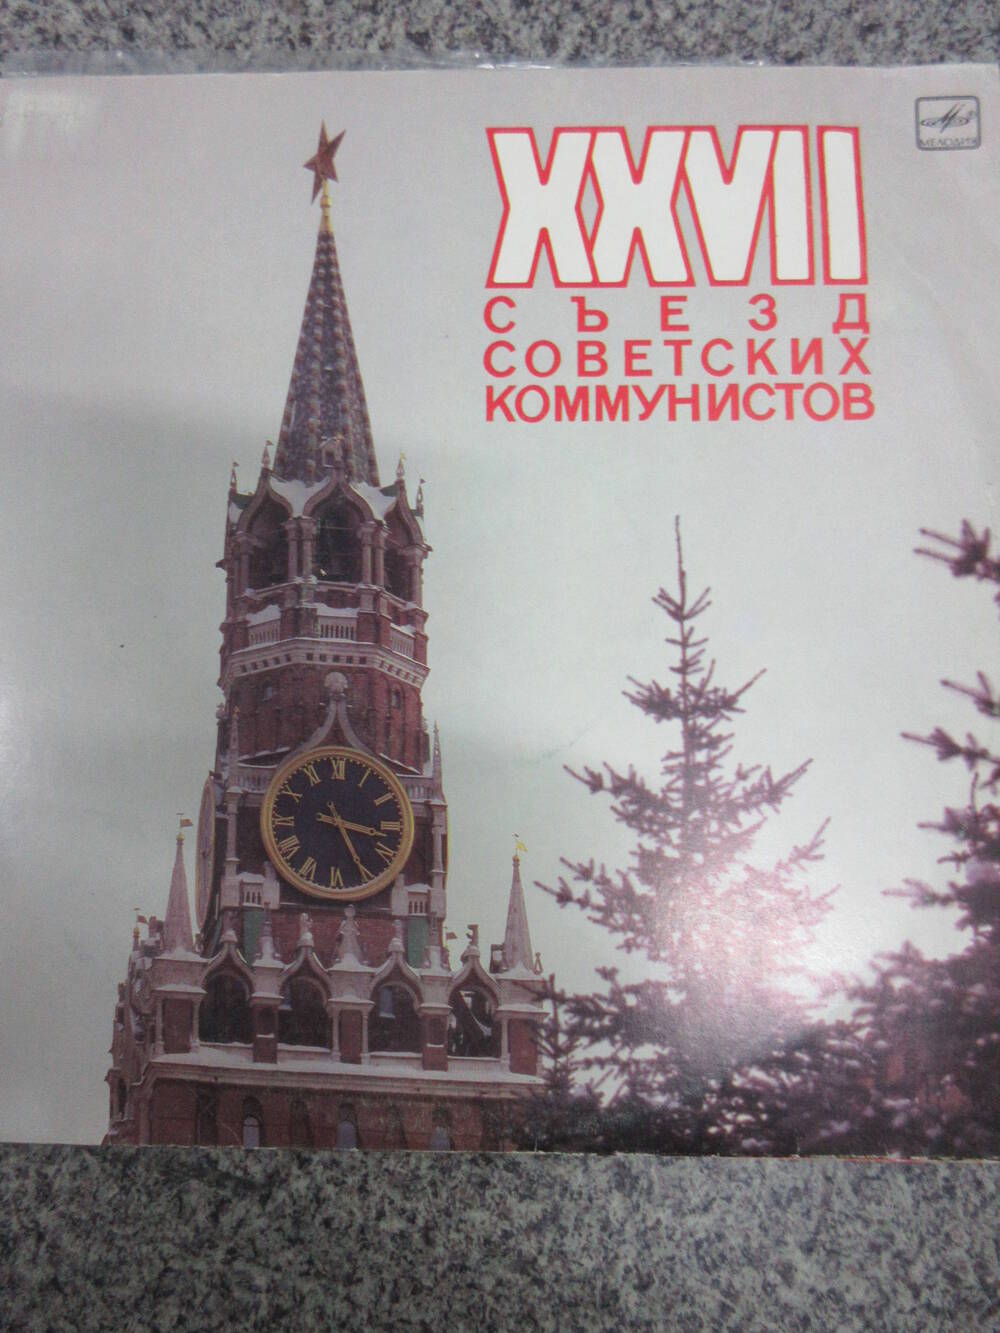 Пластинка XXVII съезд советских коммунистов часть 2 (в пакете 1980-х годов)